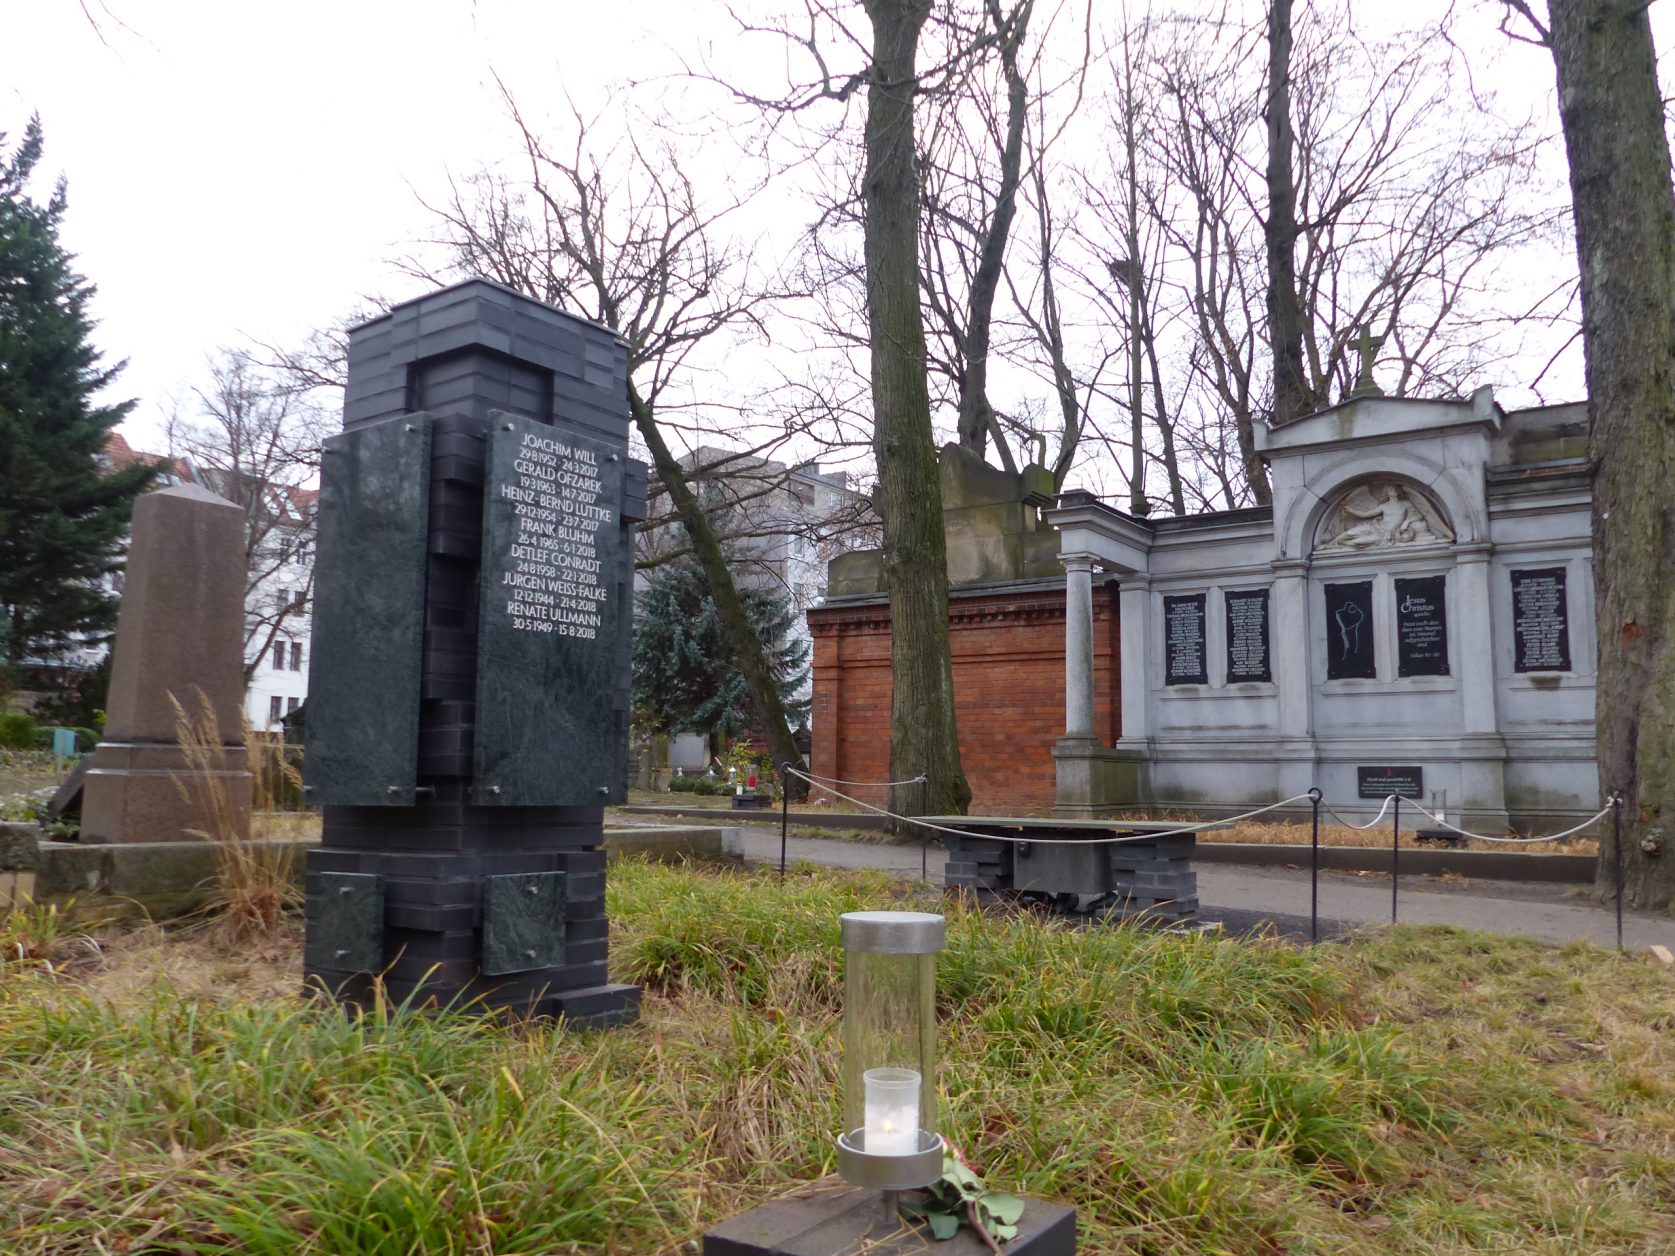 Die vom Verein Denk mal positHIV eingerichtete Grabstätte für Menschen mit HIV und AIDS in Berlin